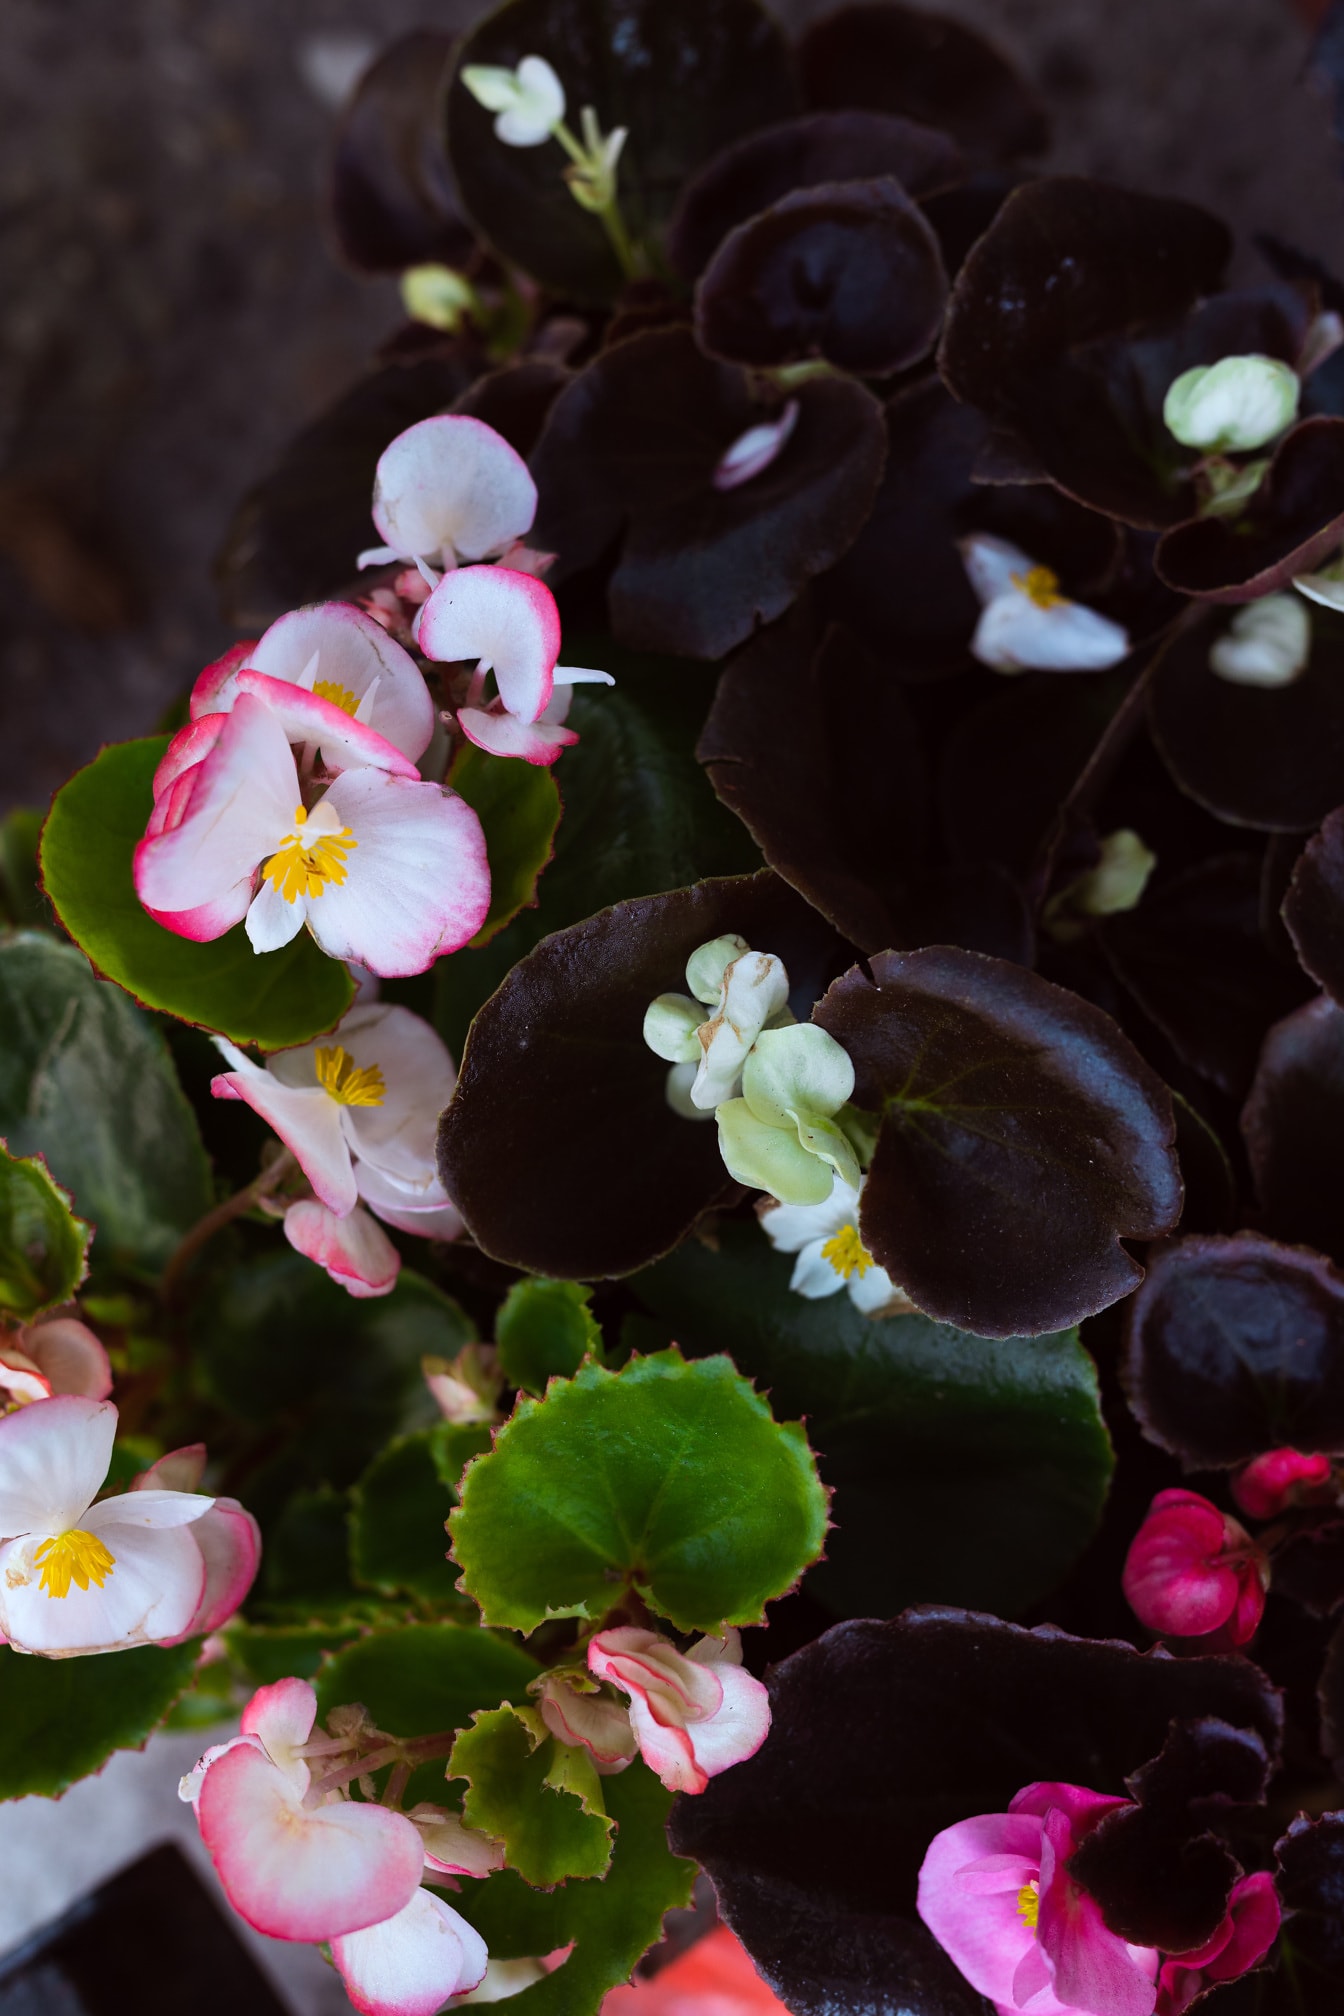 粉红色的秋海棠 (Semperflorens-cultorum) 花园里的特写花